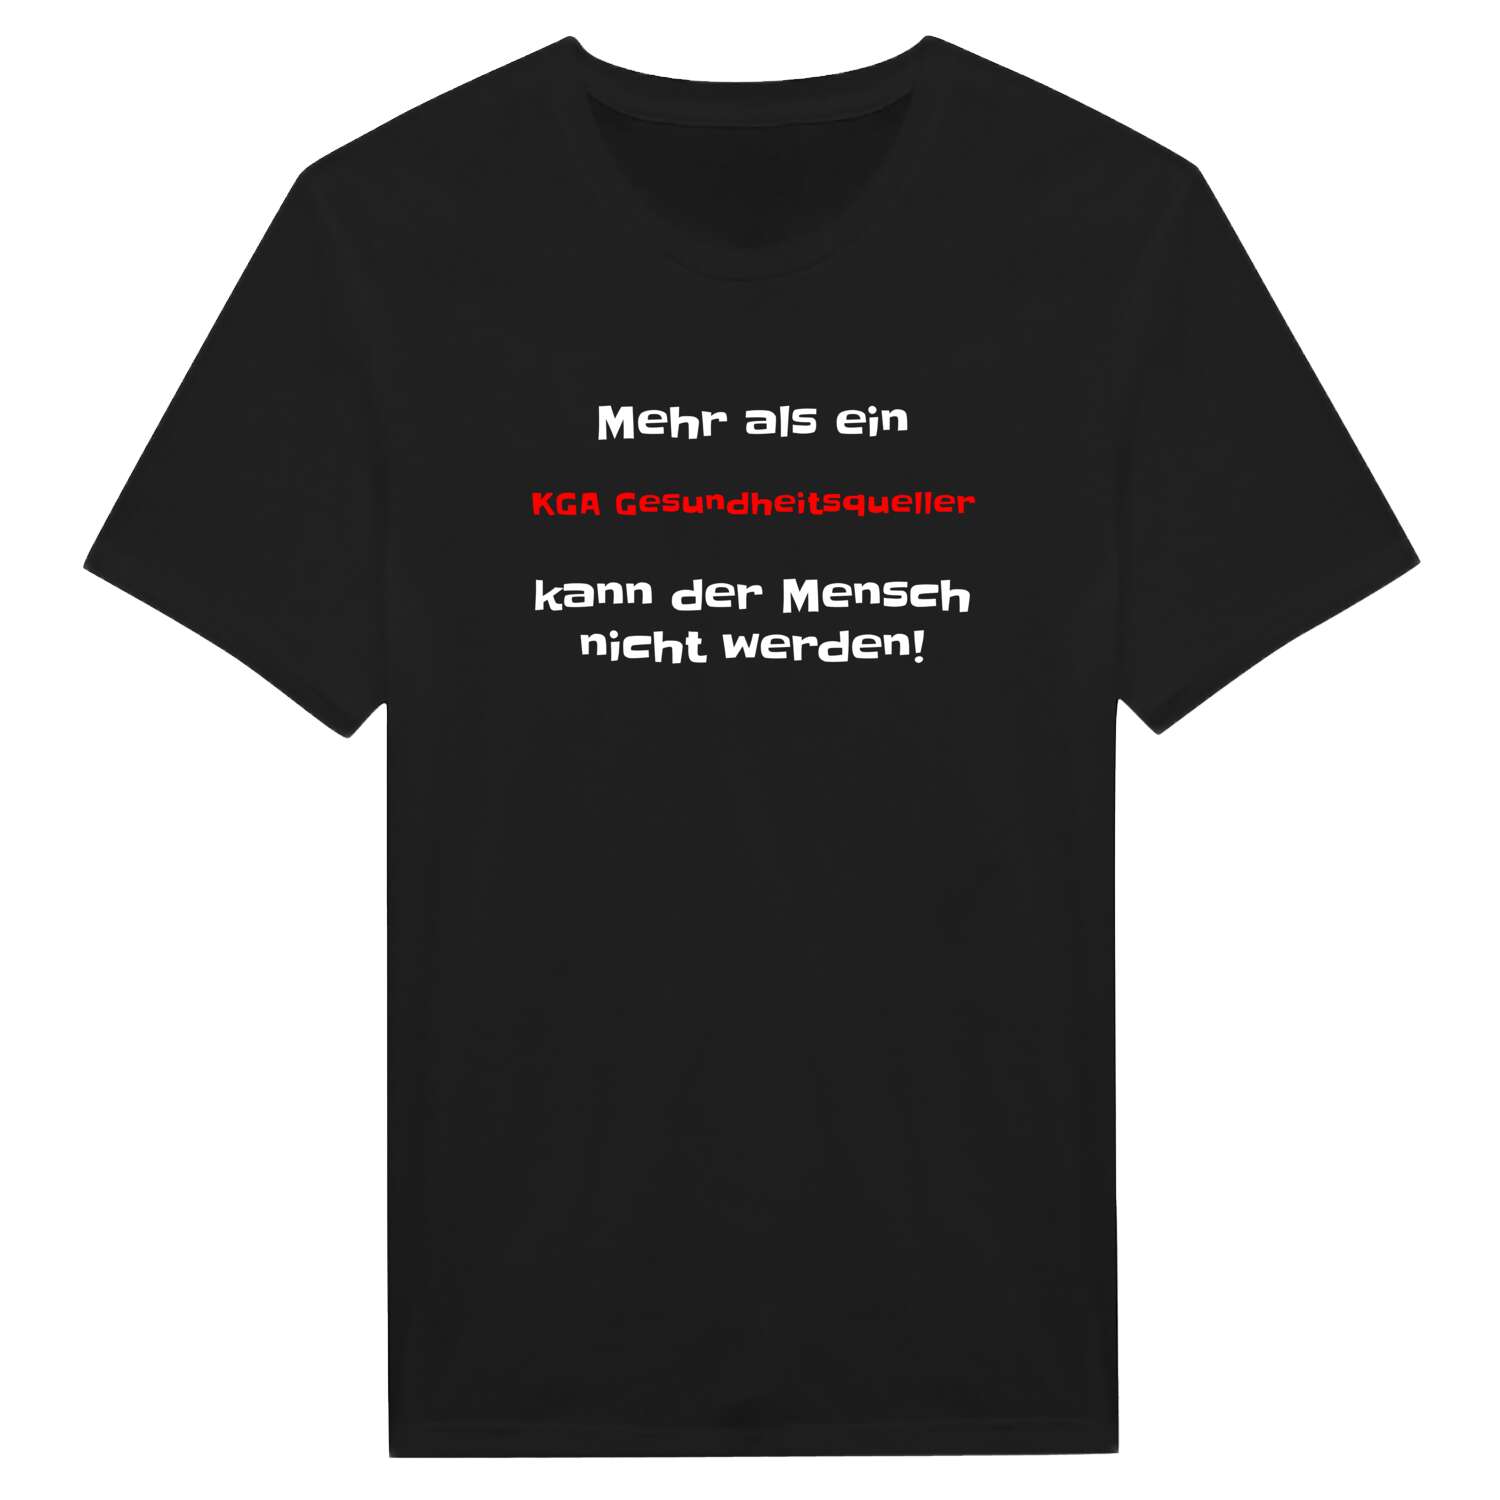 KGA Gesundheitsquell T-Shirt »Mehr als ein«